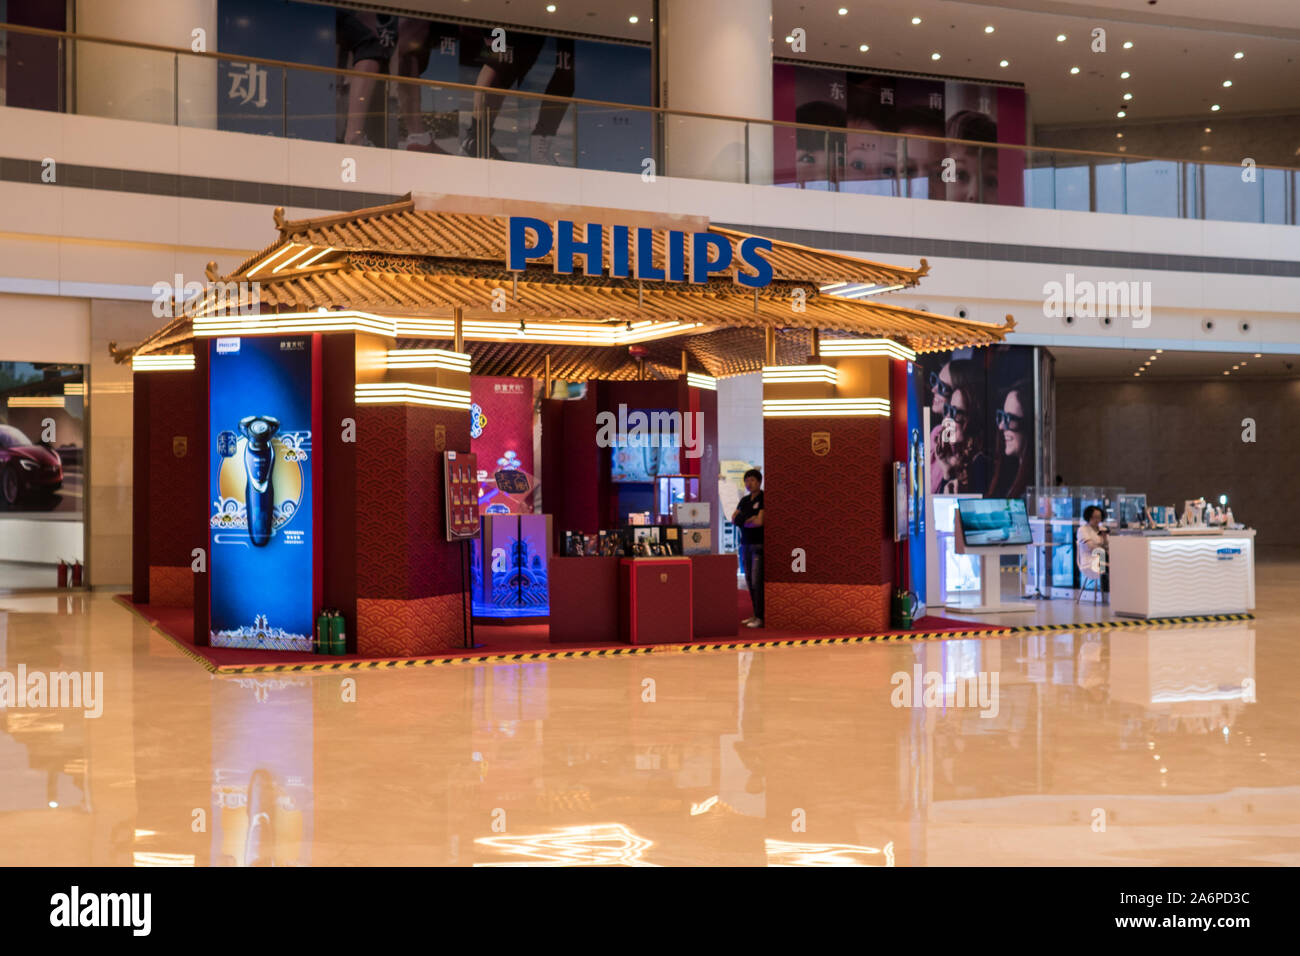 Philips in Cina: Negozio facciata durante una vendita speciale (Vendita scritto in caratteri cinesi), questo marchio francese rende i prodotti elettronici, Cina, 17 giugno Foto Stock